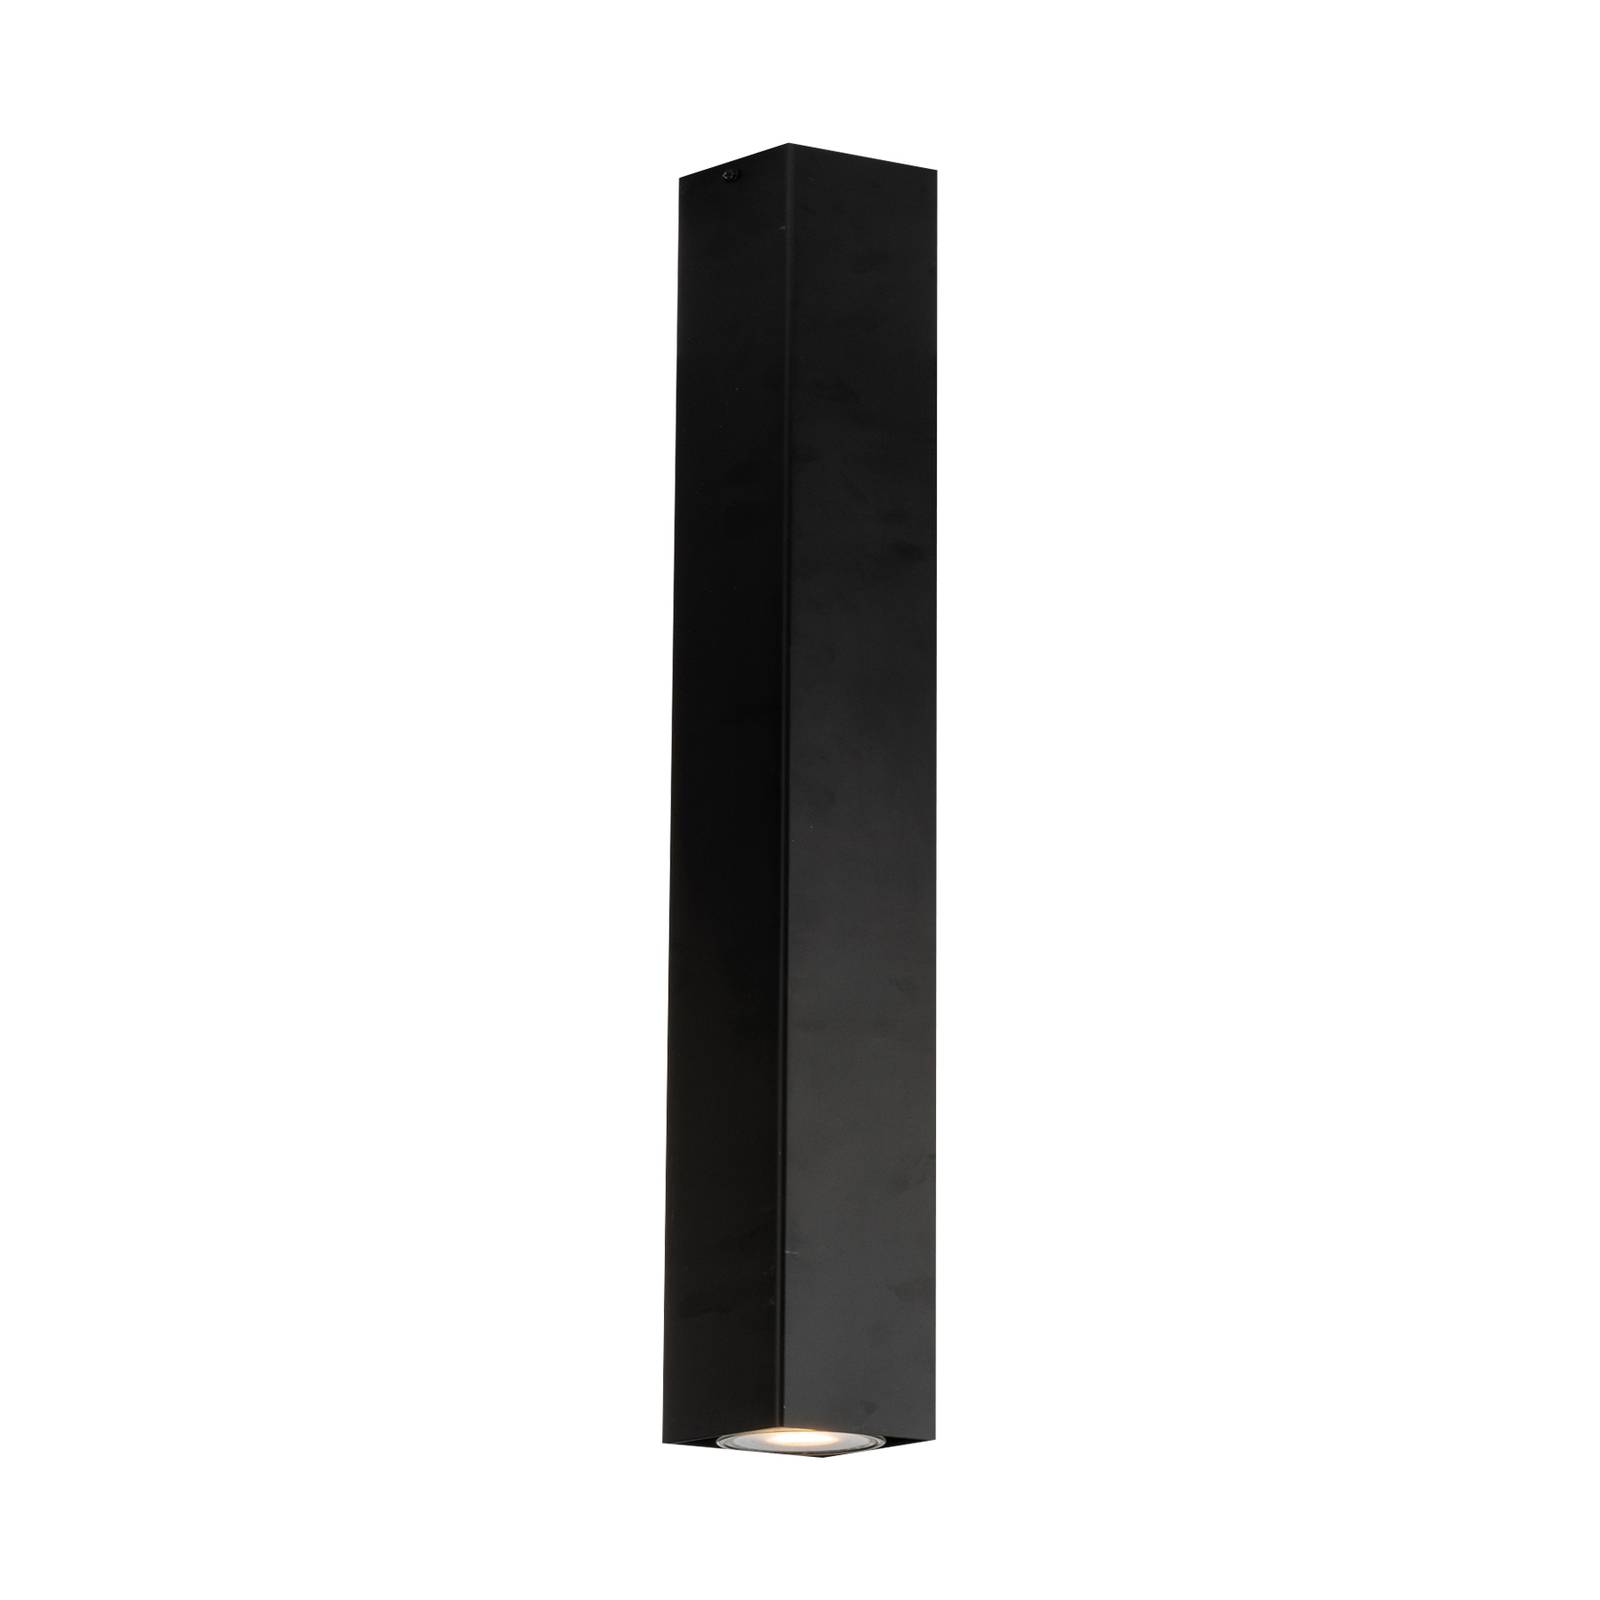 Eco-Light Downlight Fluke de forme angulaire hauteur 40 cm noir